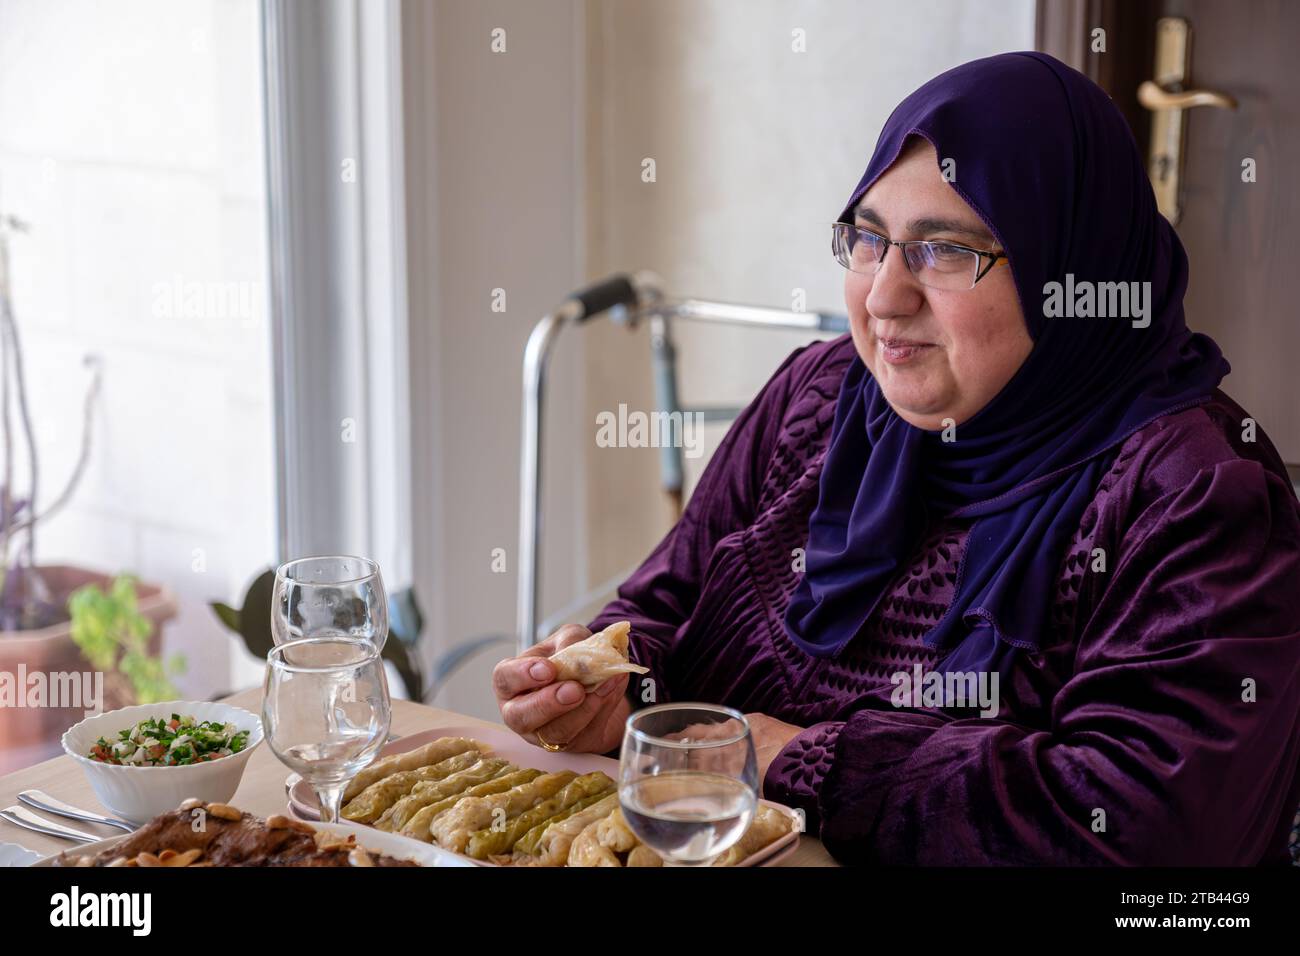 Porträt für muslimische Frau mittleren Alters auf dem Esstisch mit einem Lächeln im Gesicht Stockfoto